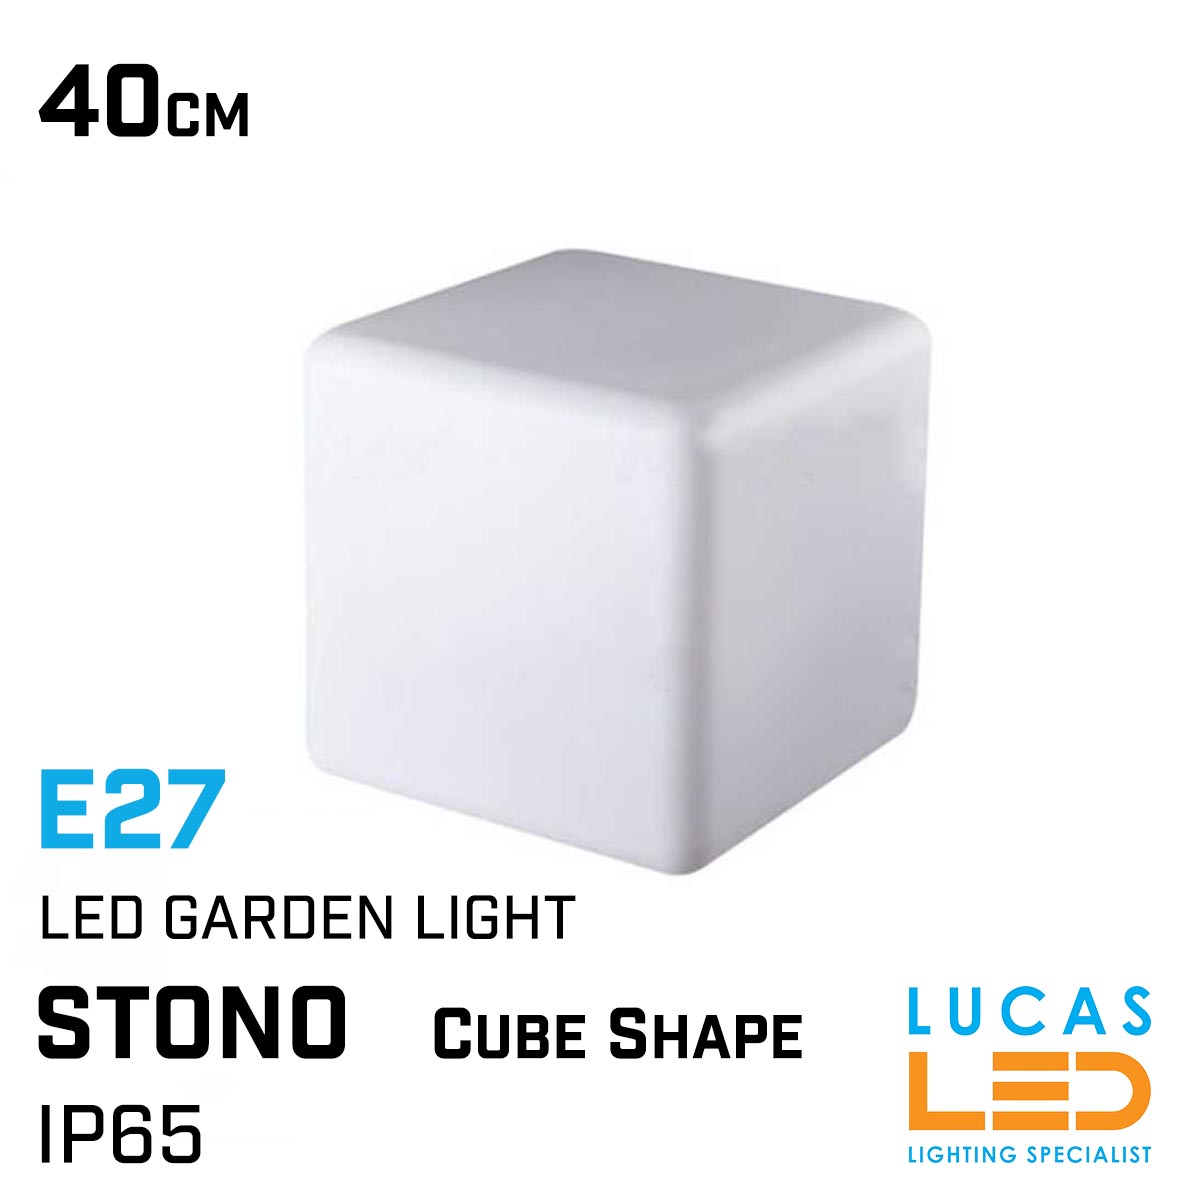 Outdoor LED Garden Decor table lamp - E27 - IP65 - STONO Cube shape 40cm